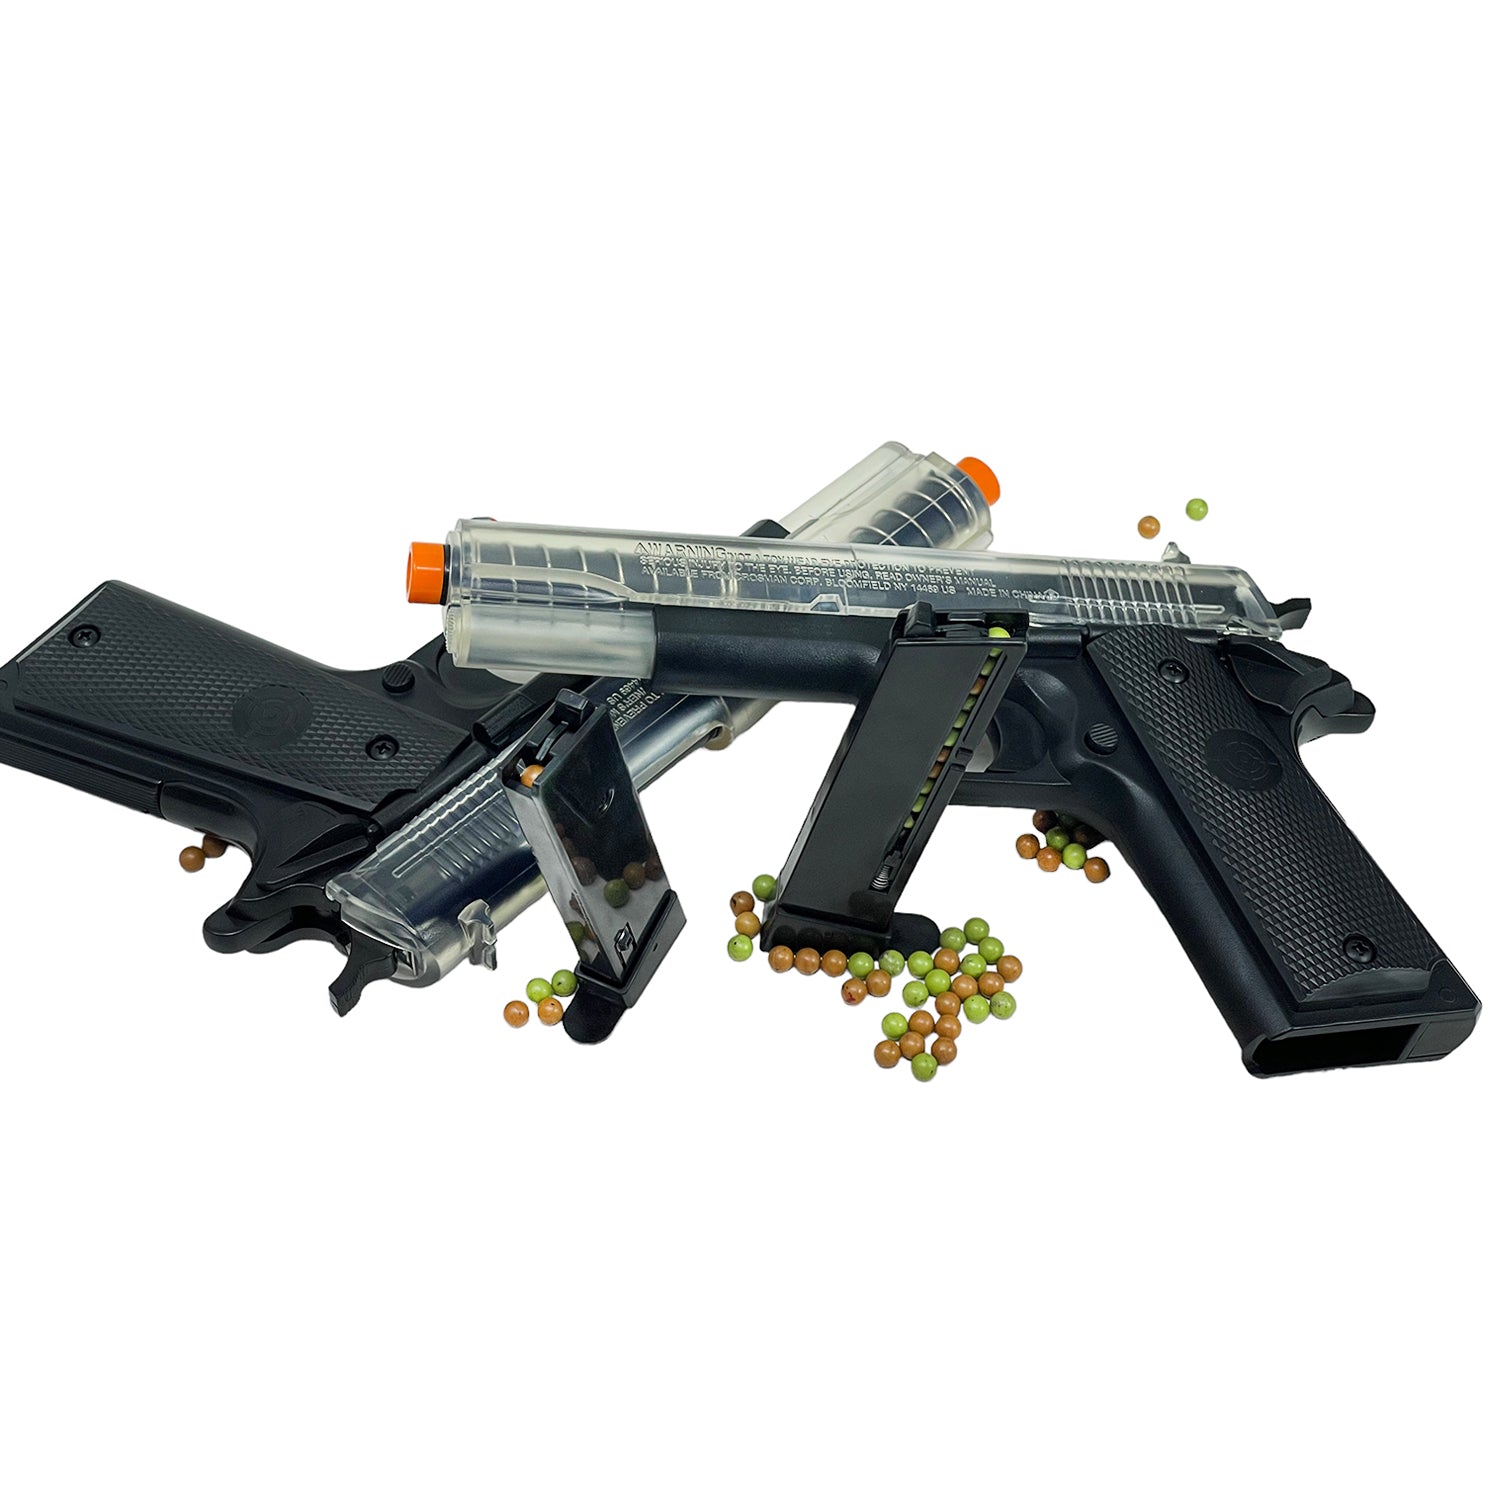 Pistolas en Kit modelo Stinger ™ Challenge